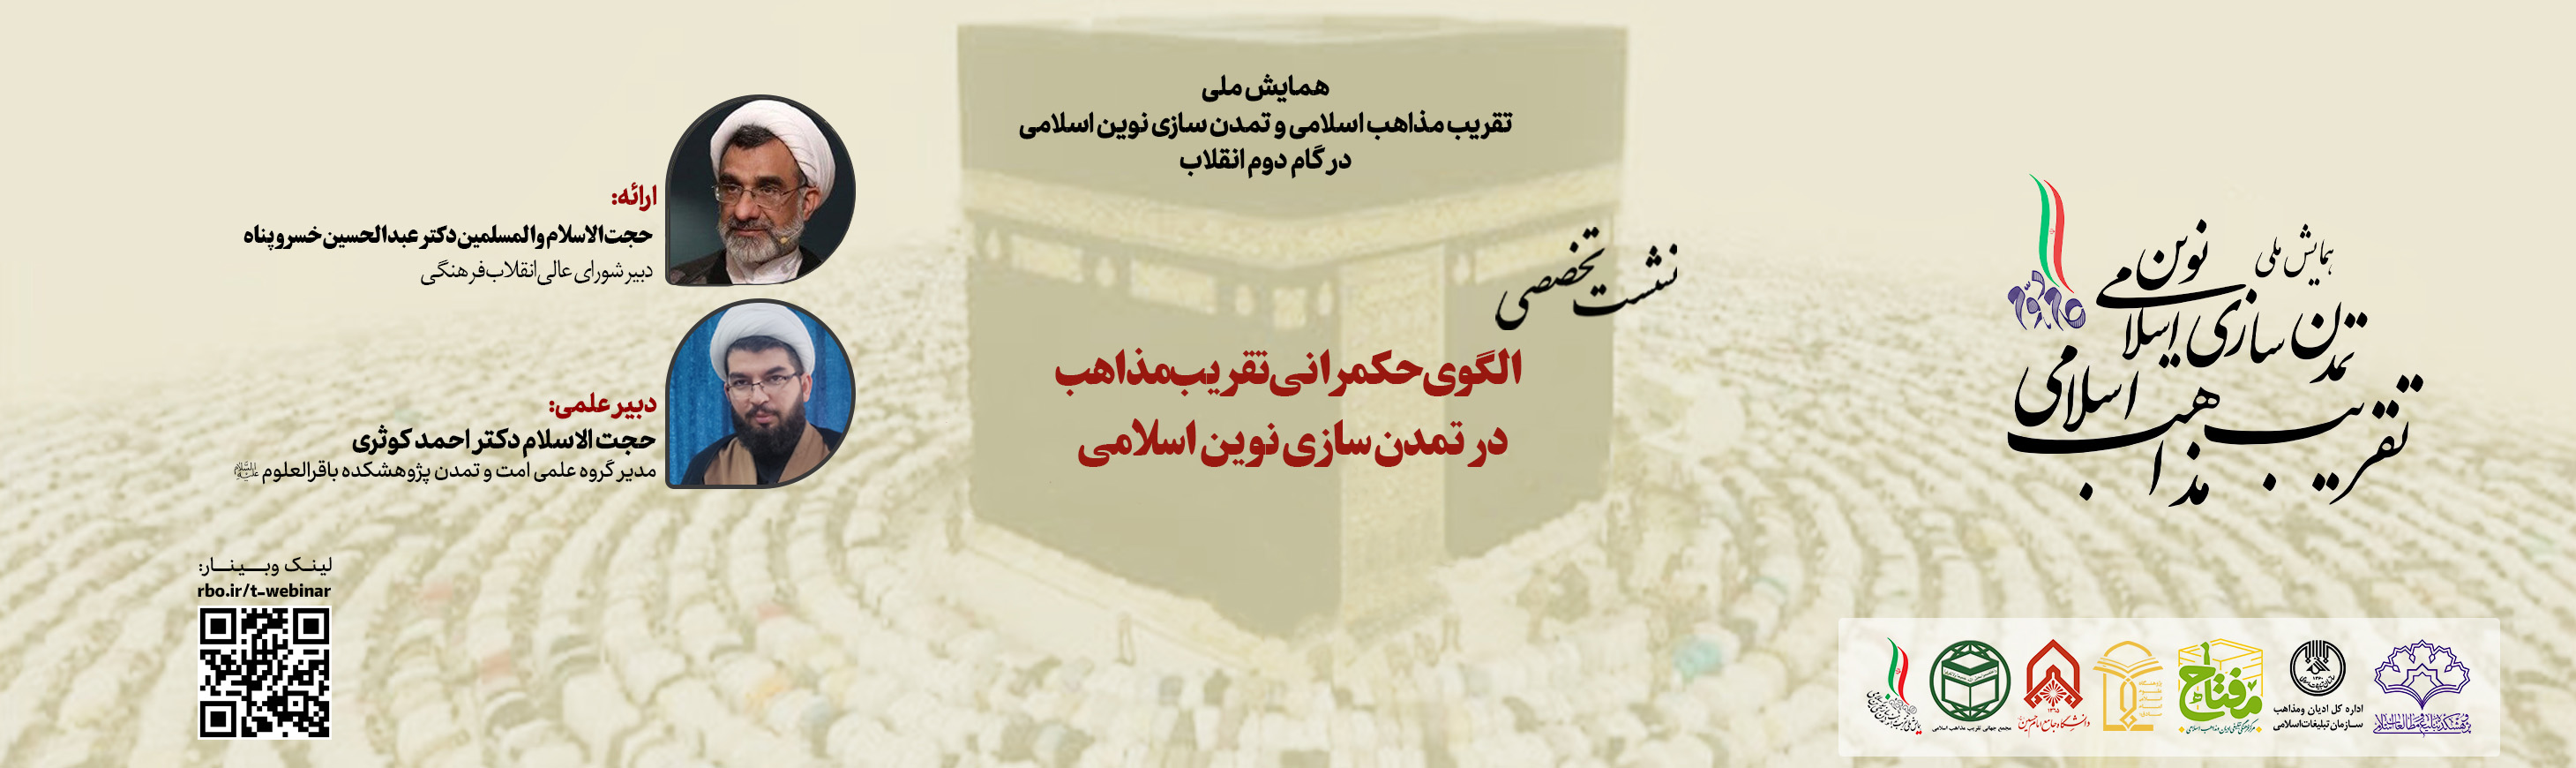 گزارش برگزاری نشست تخصصی با موضوع «الگوی حکمرانی تقریب مذاهب در تمدن سازی نوین اسلامی»